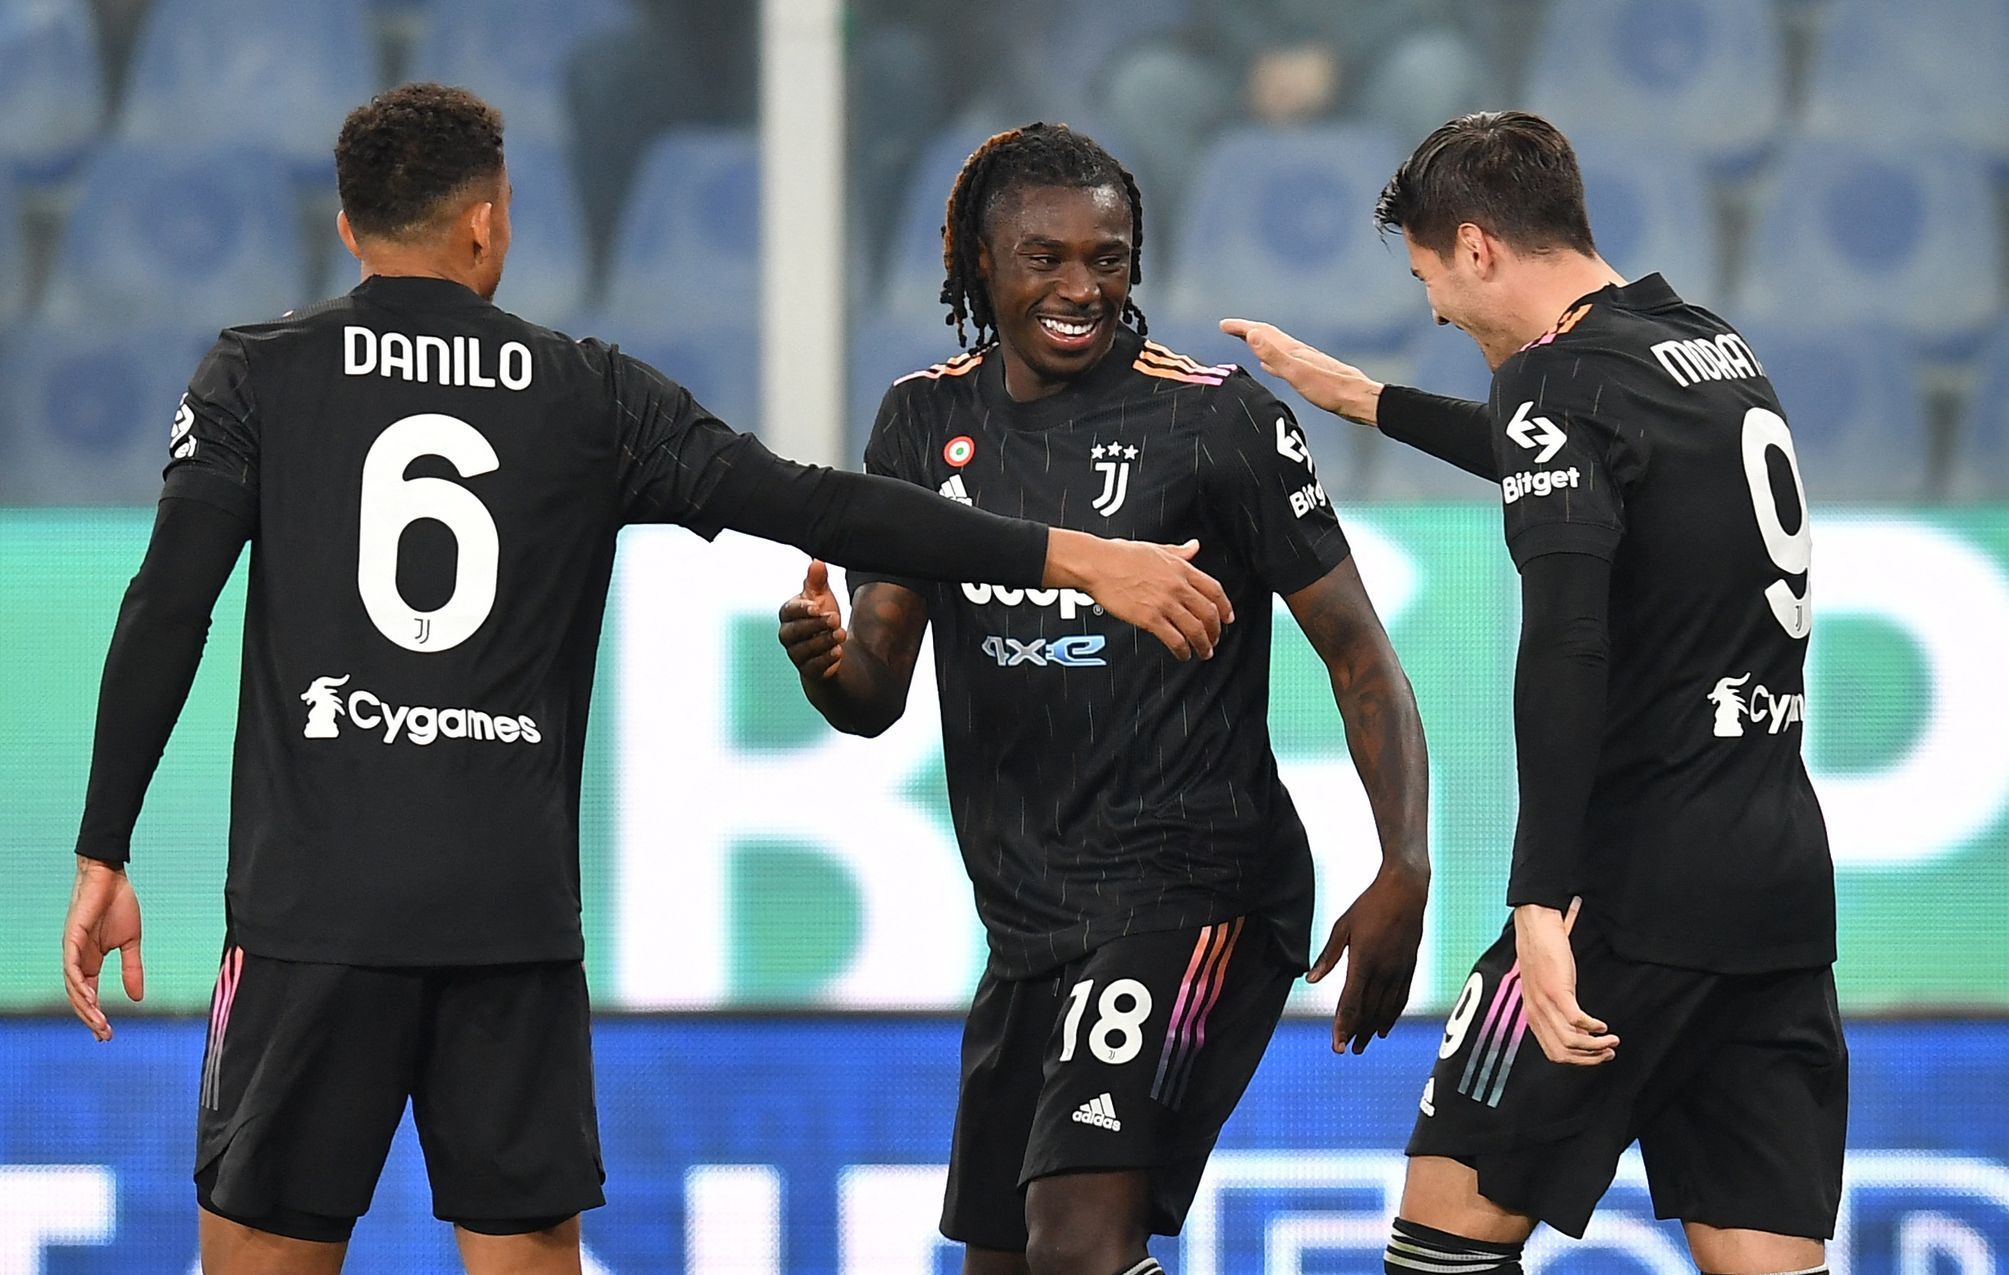 La Juventus è imbattuta da quindici partite di fila, l’AC resta in testa alla Serie A.